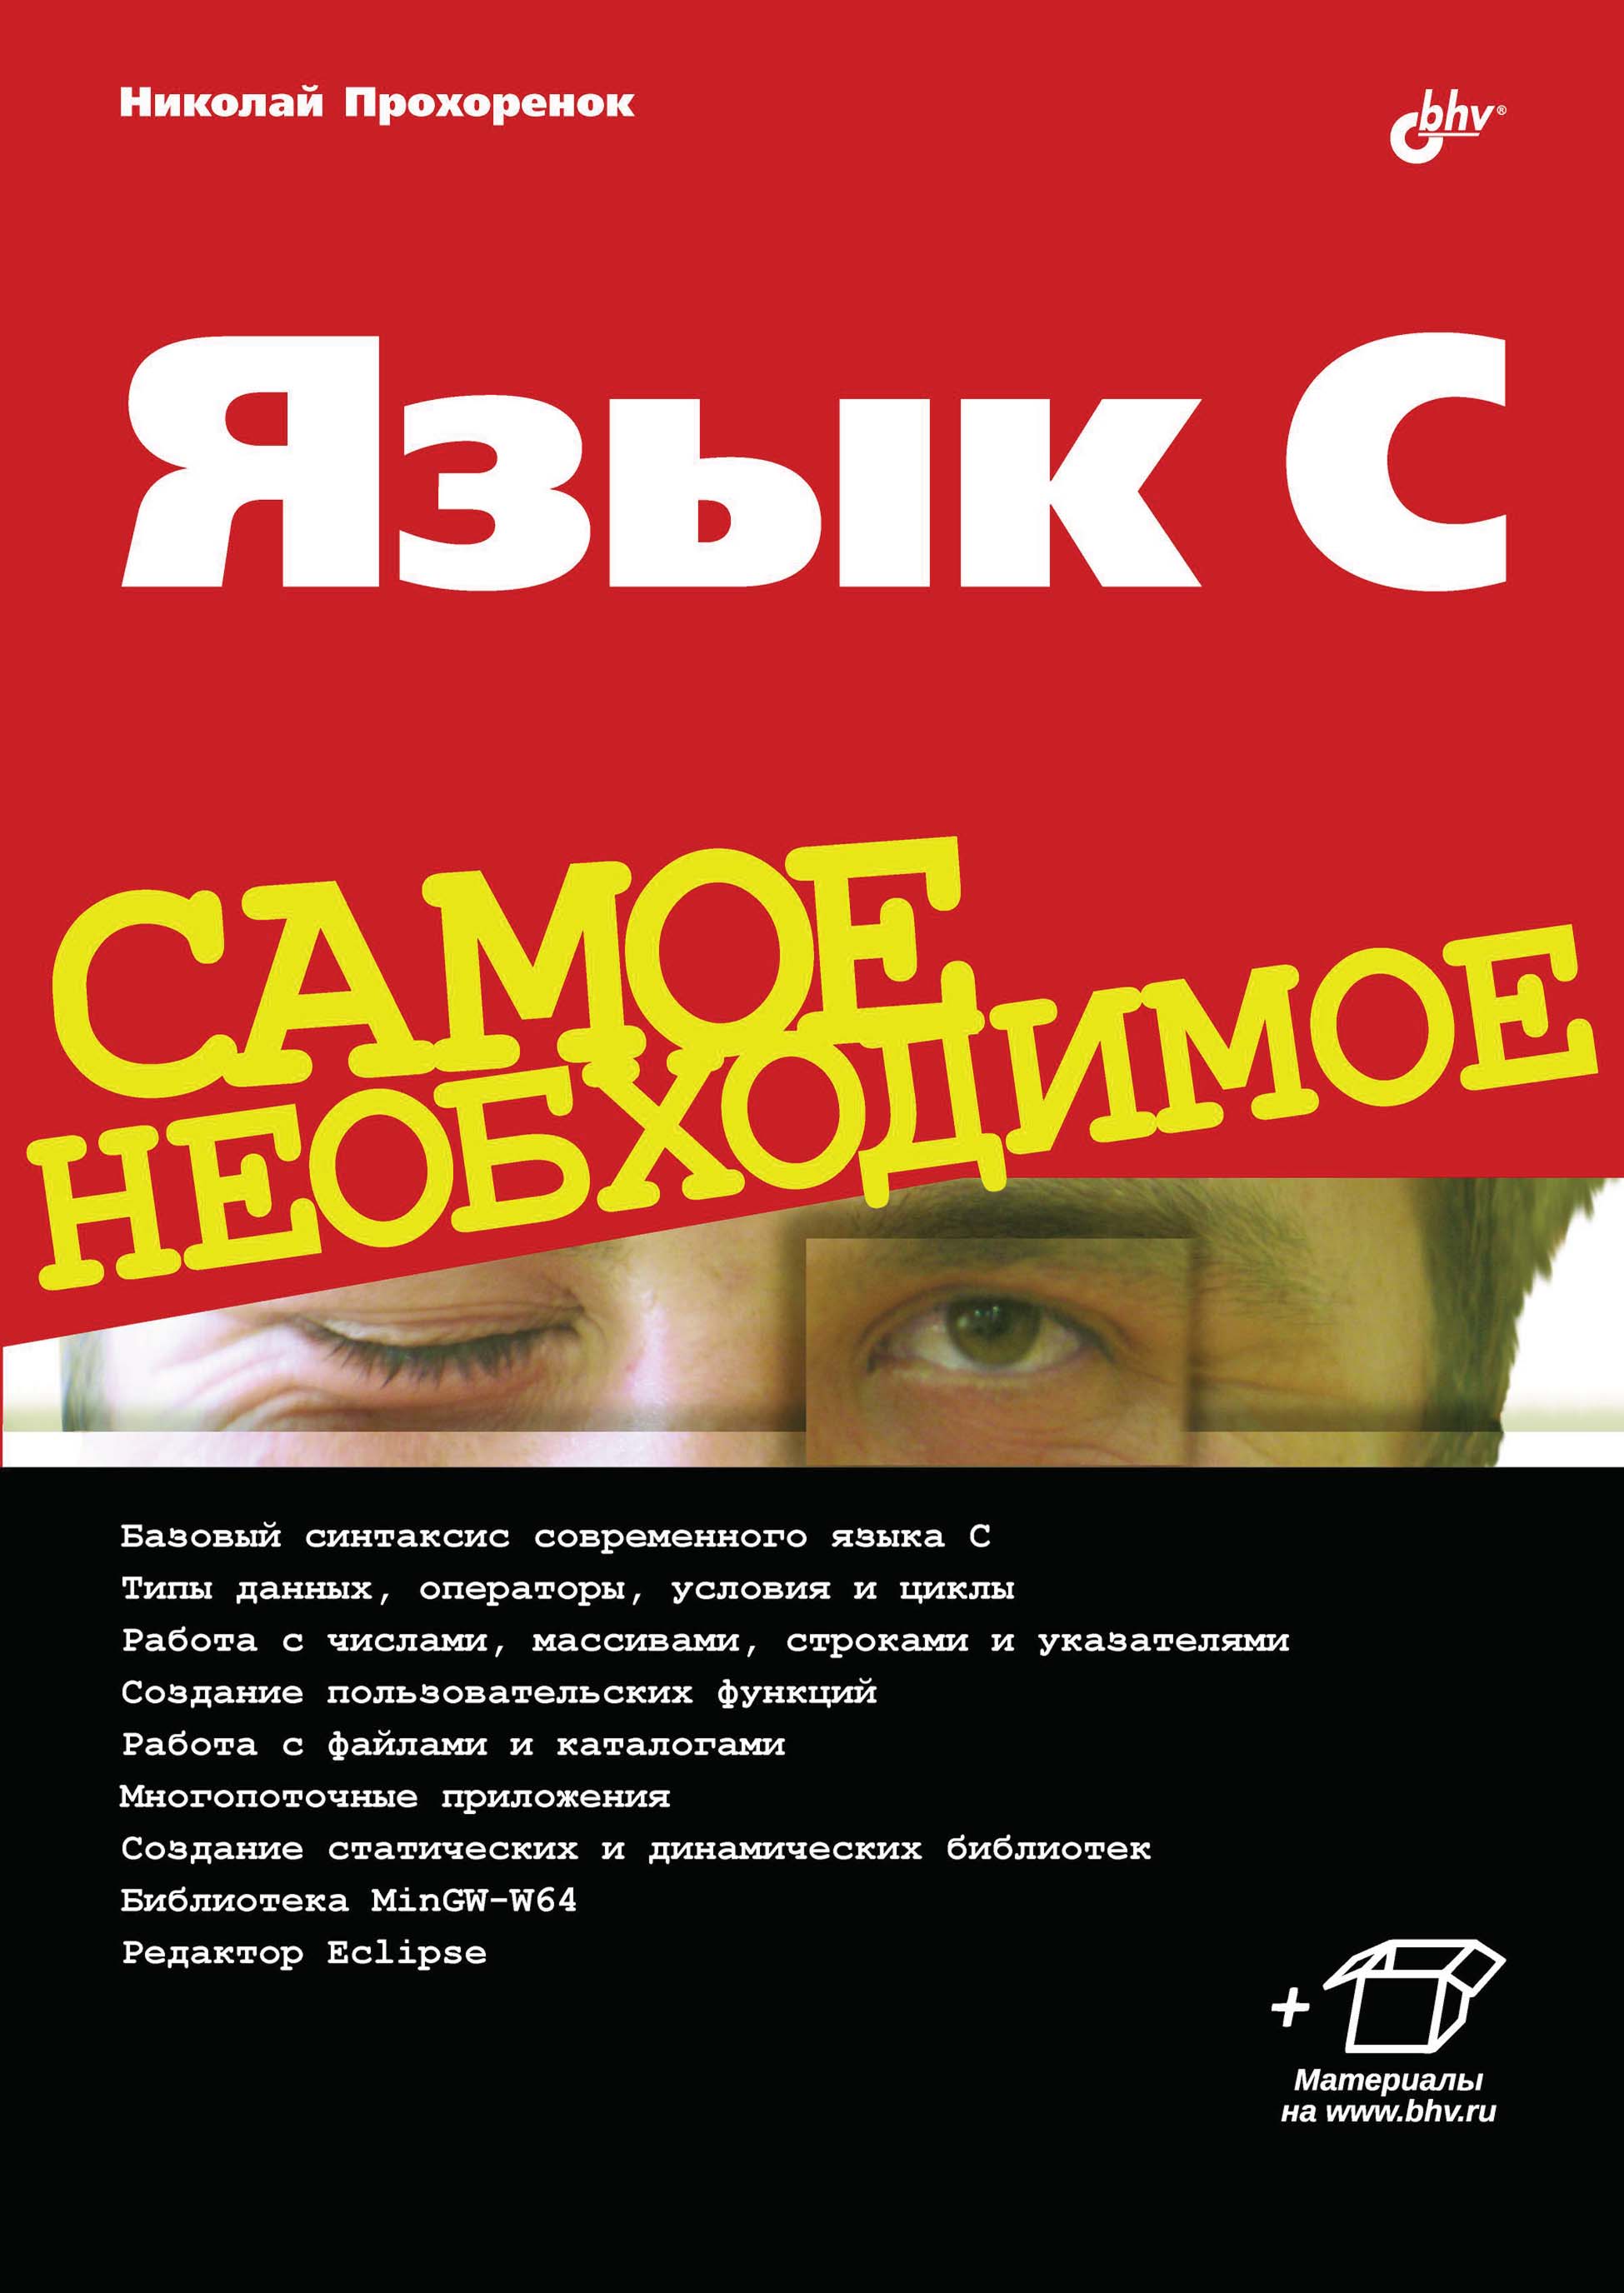 Книга языка c. Прохоренок. Русский язык топ. Джош лоспинозо с++ книги.